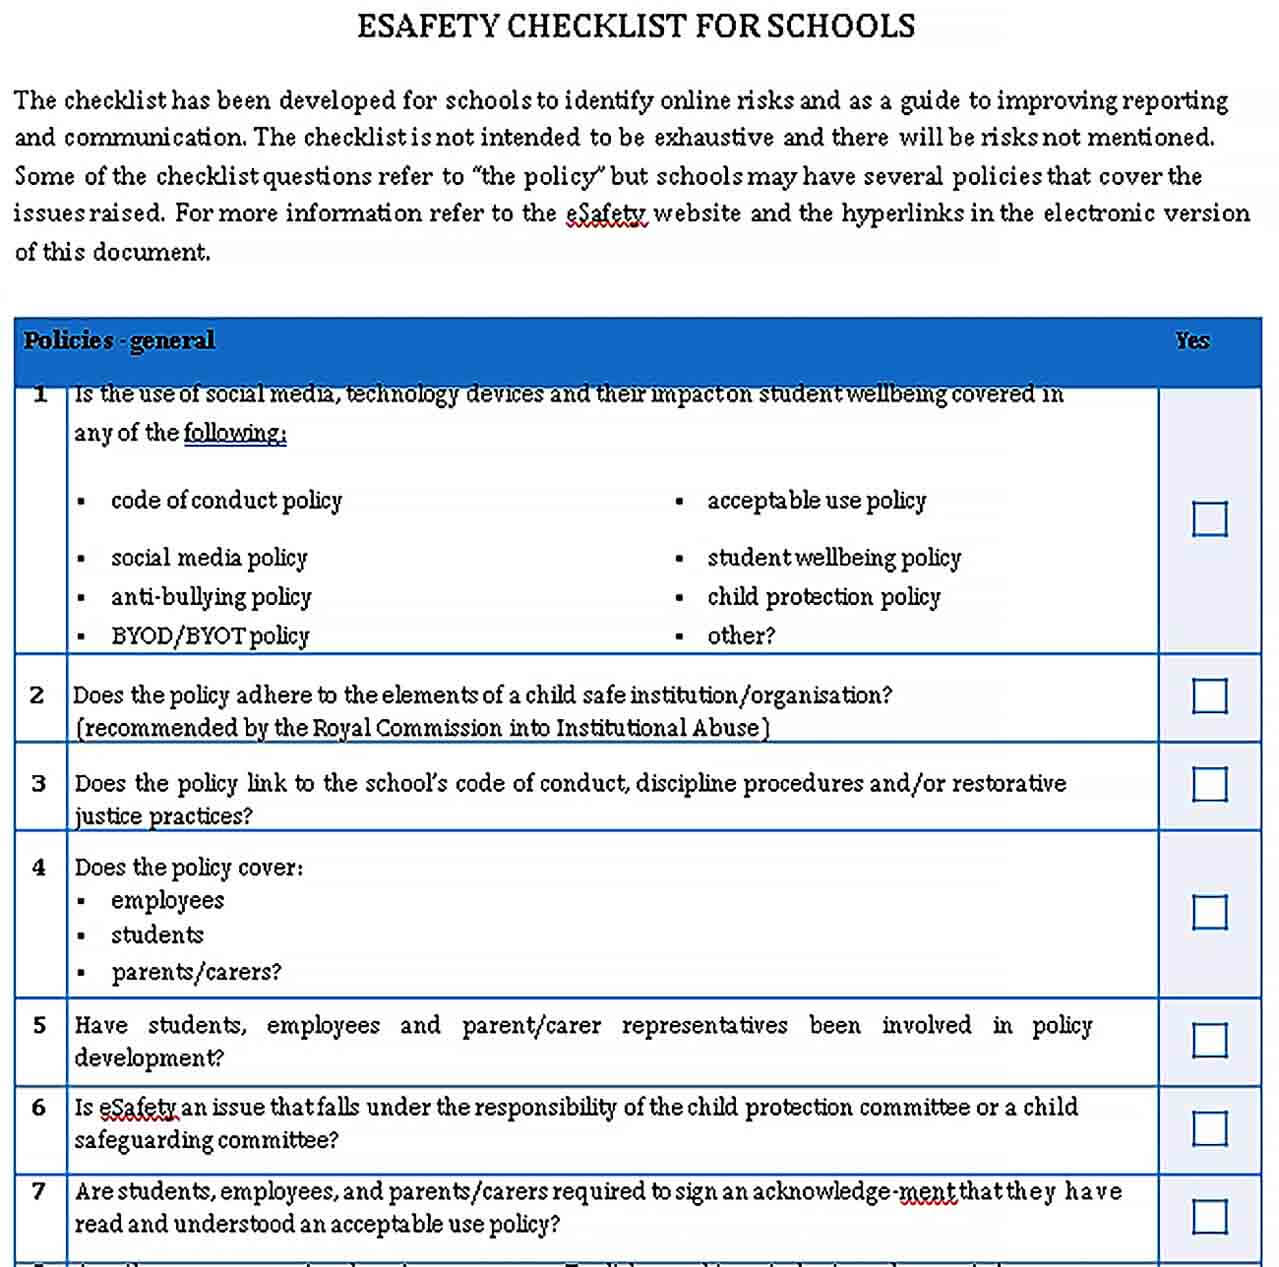 Sample eSafety checklist for schools for school leadership teams PDF